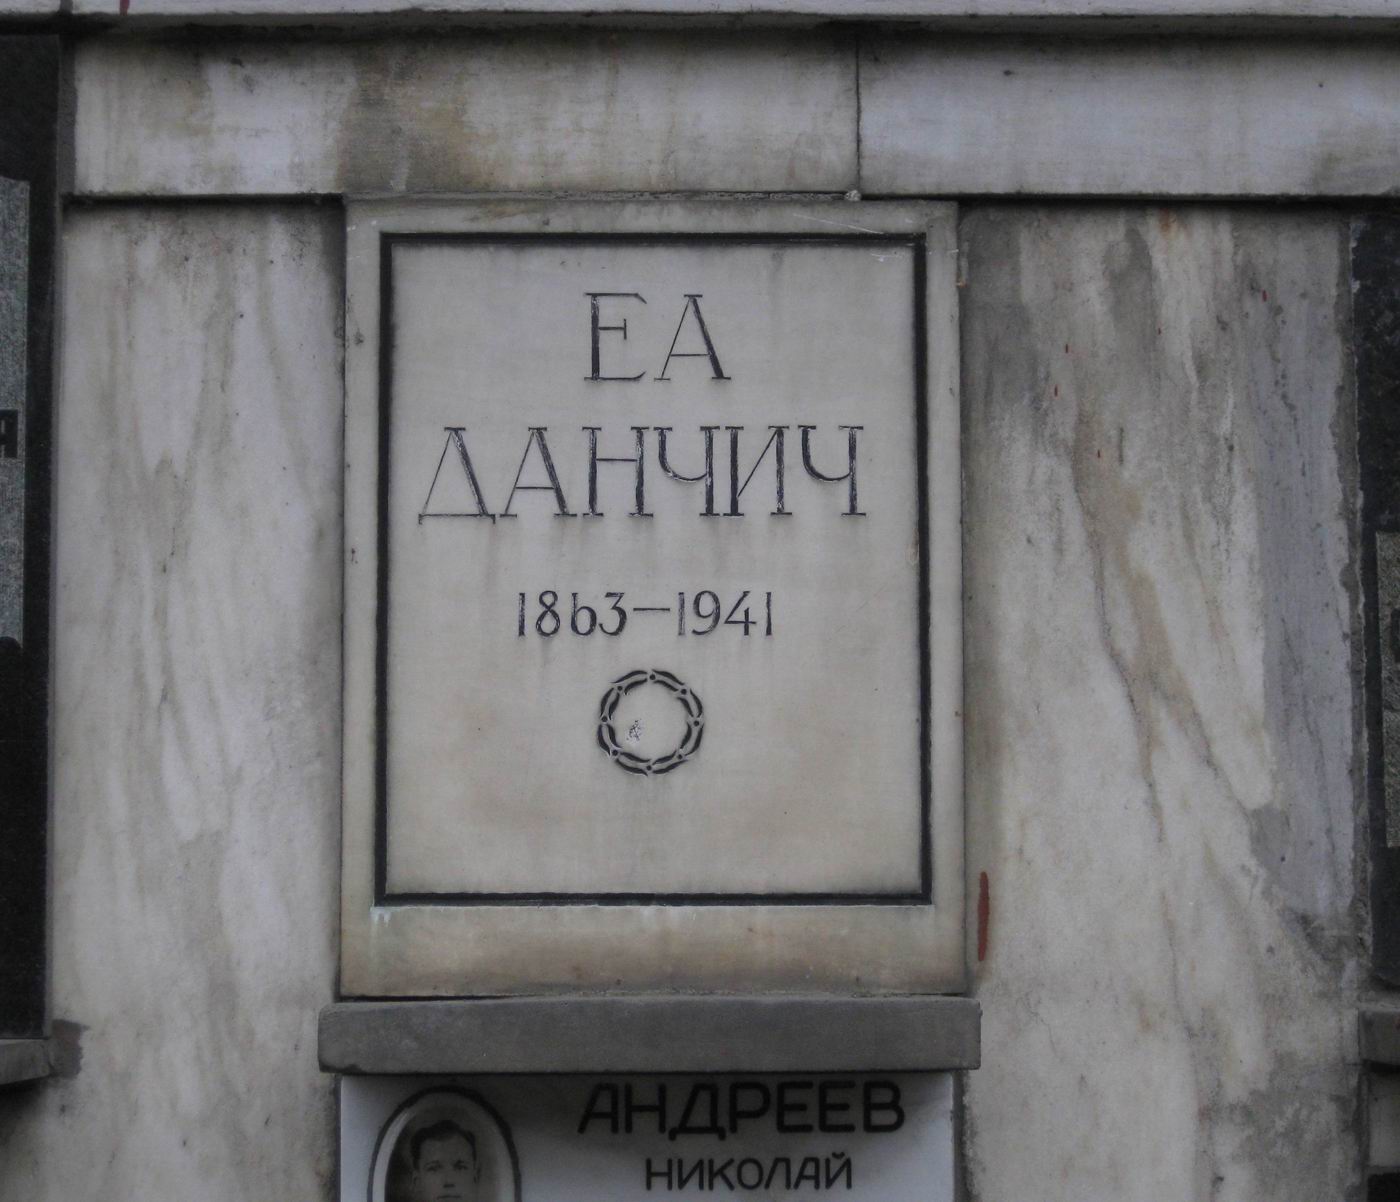 Плита на нише Данчич Е.А. (1863-1941), на Новодевичьем кладбище (колумбарий [89]-3-1).